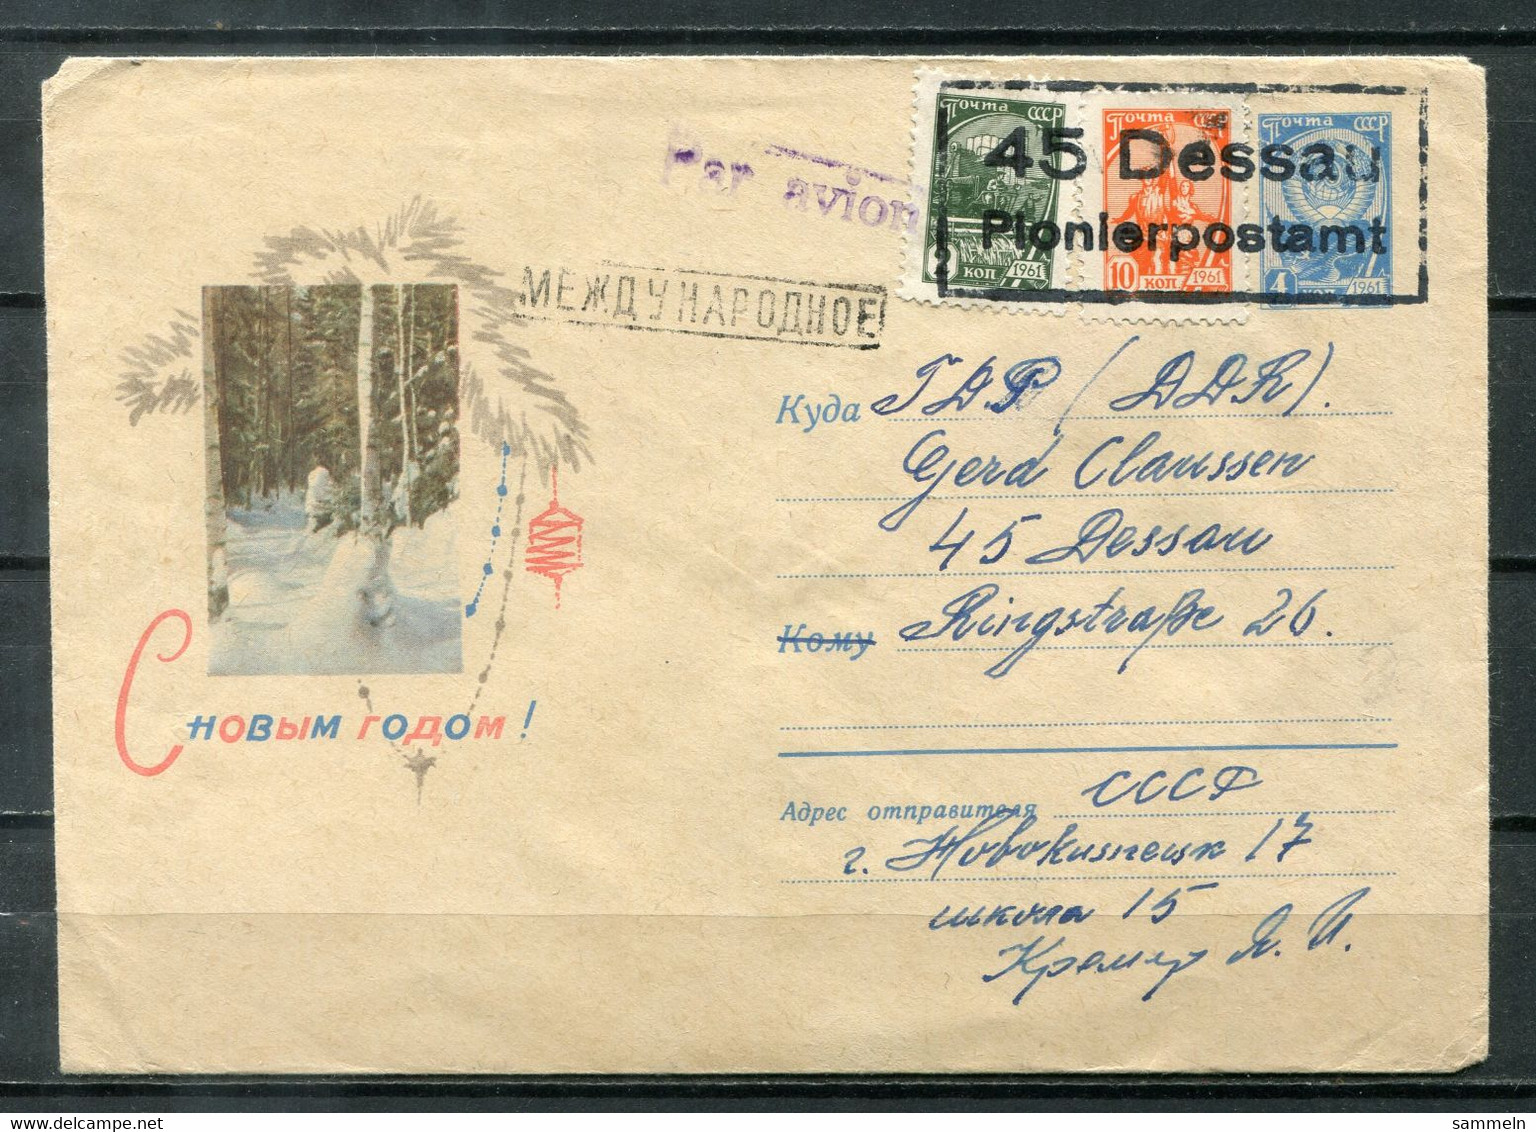 F0542 - UdSSR / DDR - Ganzsachen-Umschlag Mit Zusatz-Frankatur - Gestempelt "45 Dessau / Pionierpostamt" - 1960-69